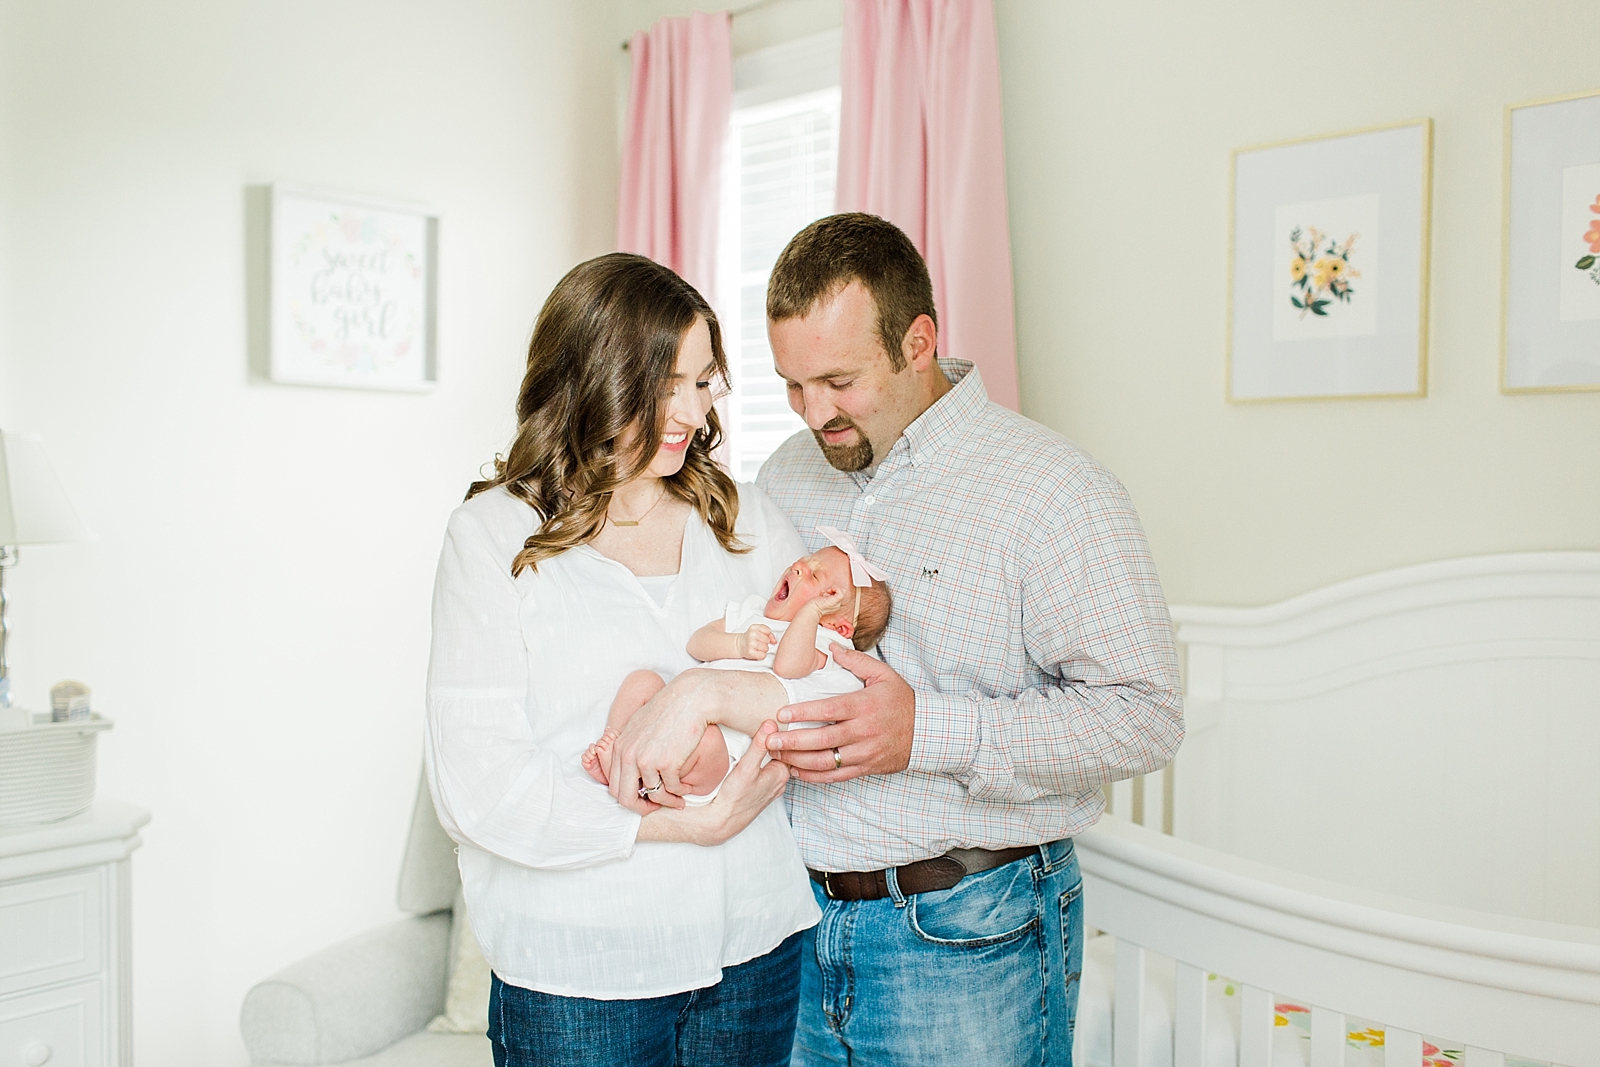 Use Embedded Keywords, spartanburg newborn photographer, asheville newborn photographer